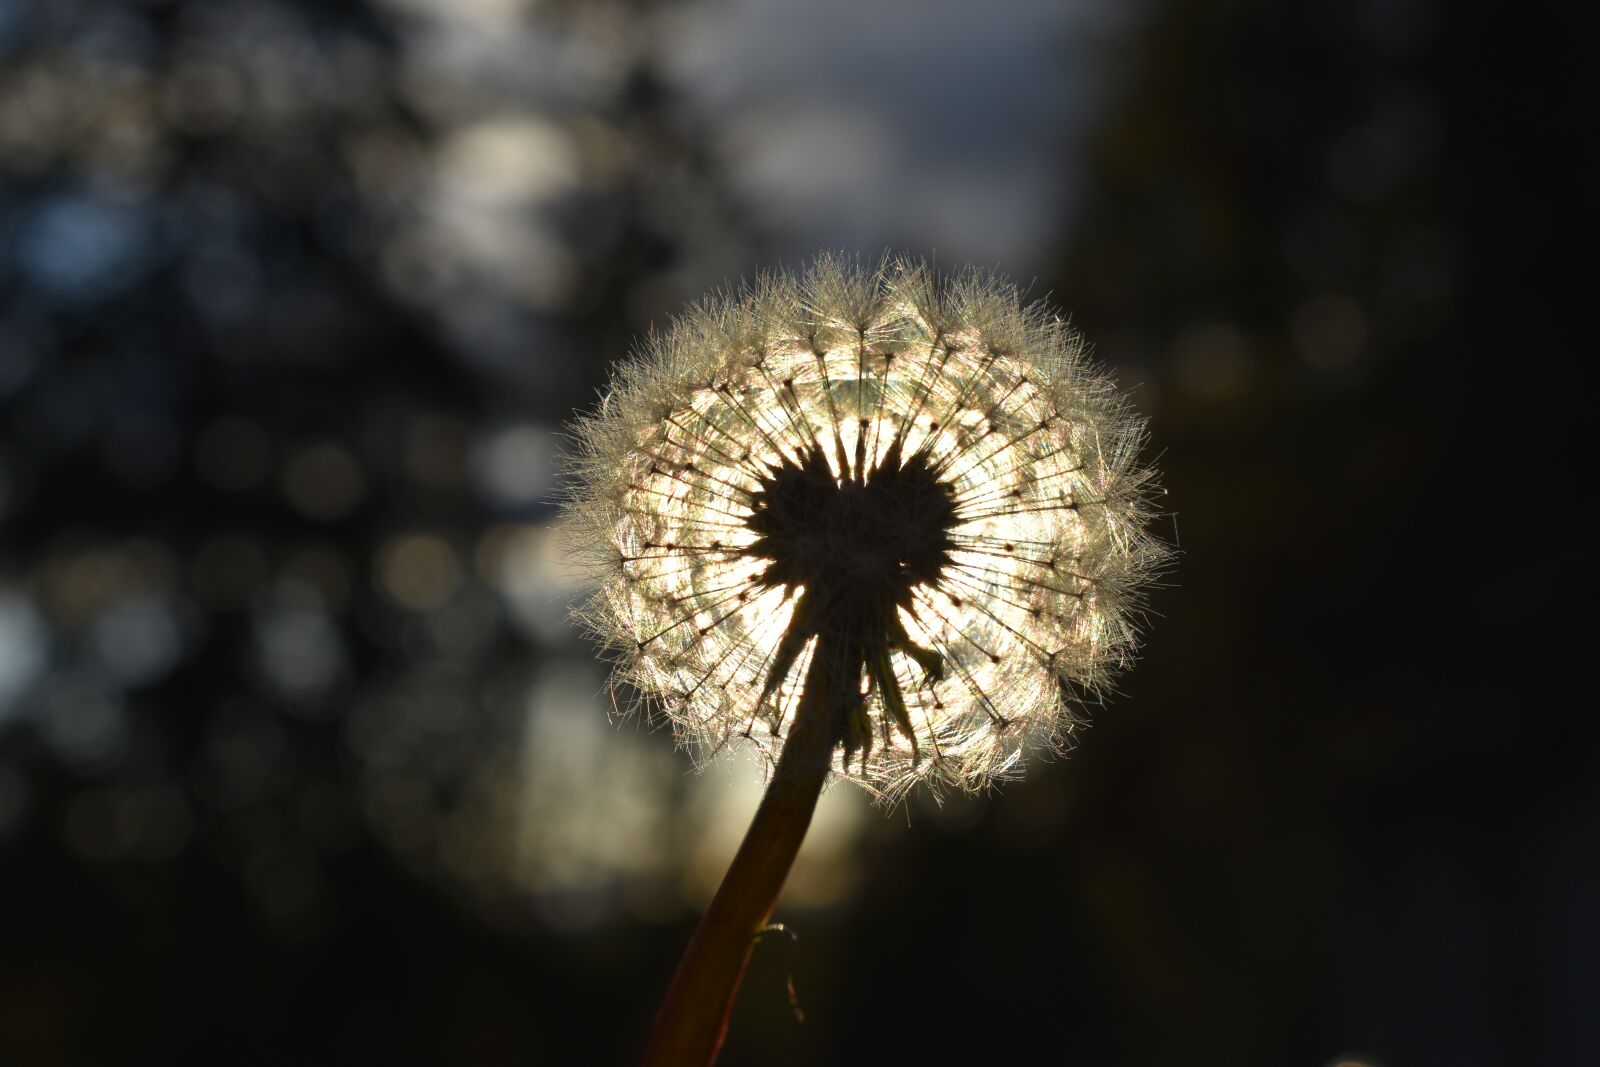 Nikon D3500 sample photo. Flower, sun, dandelion photography